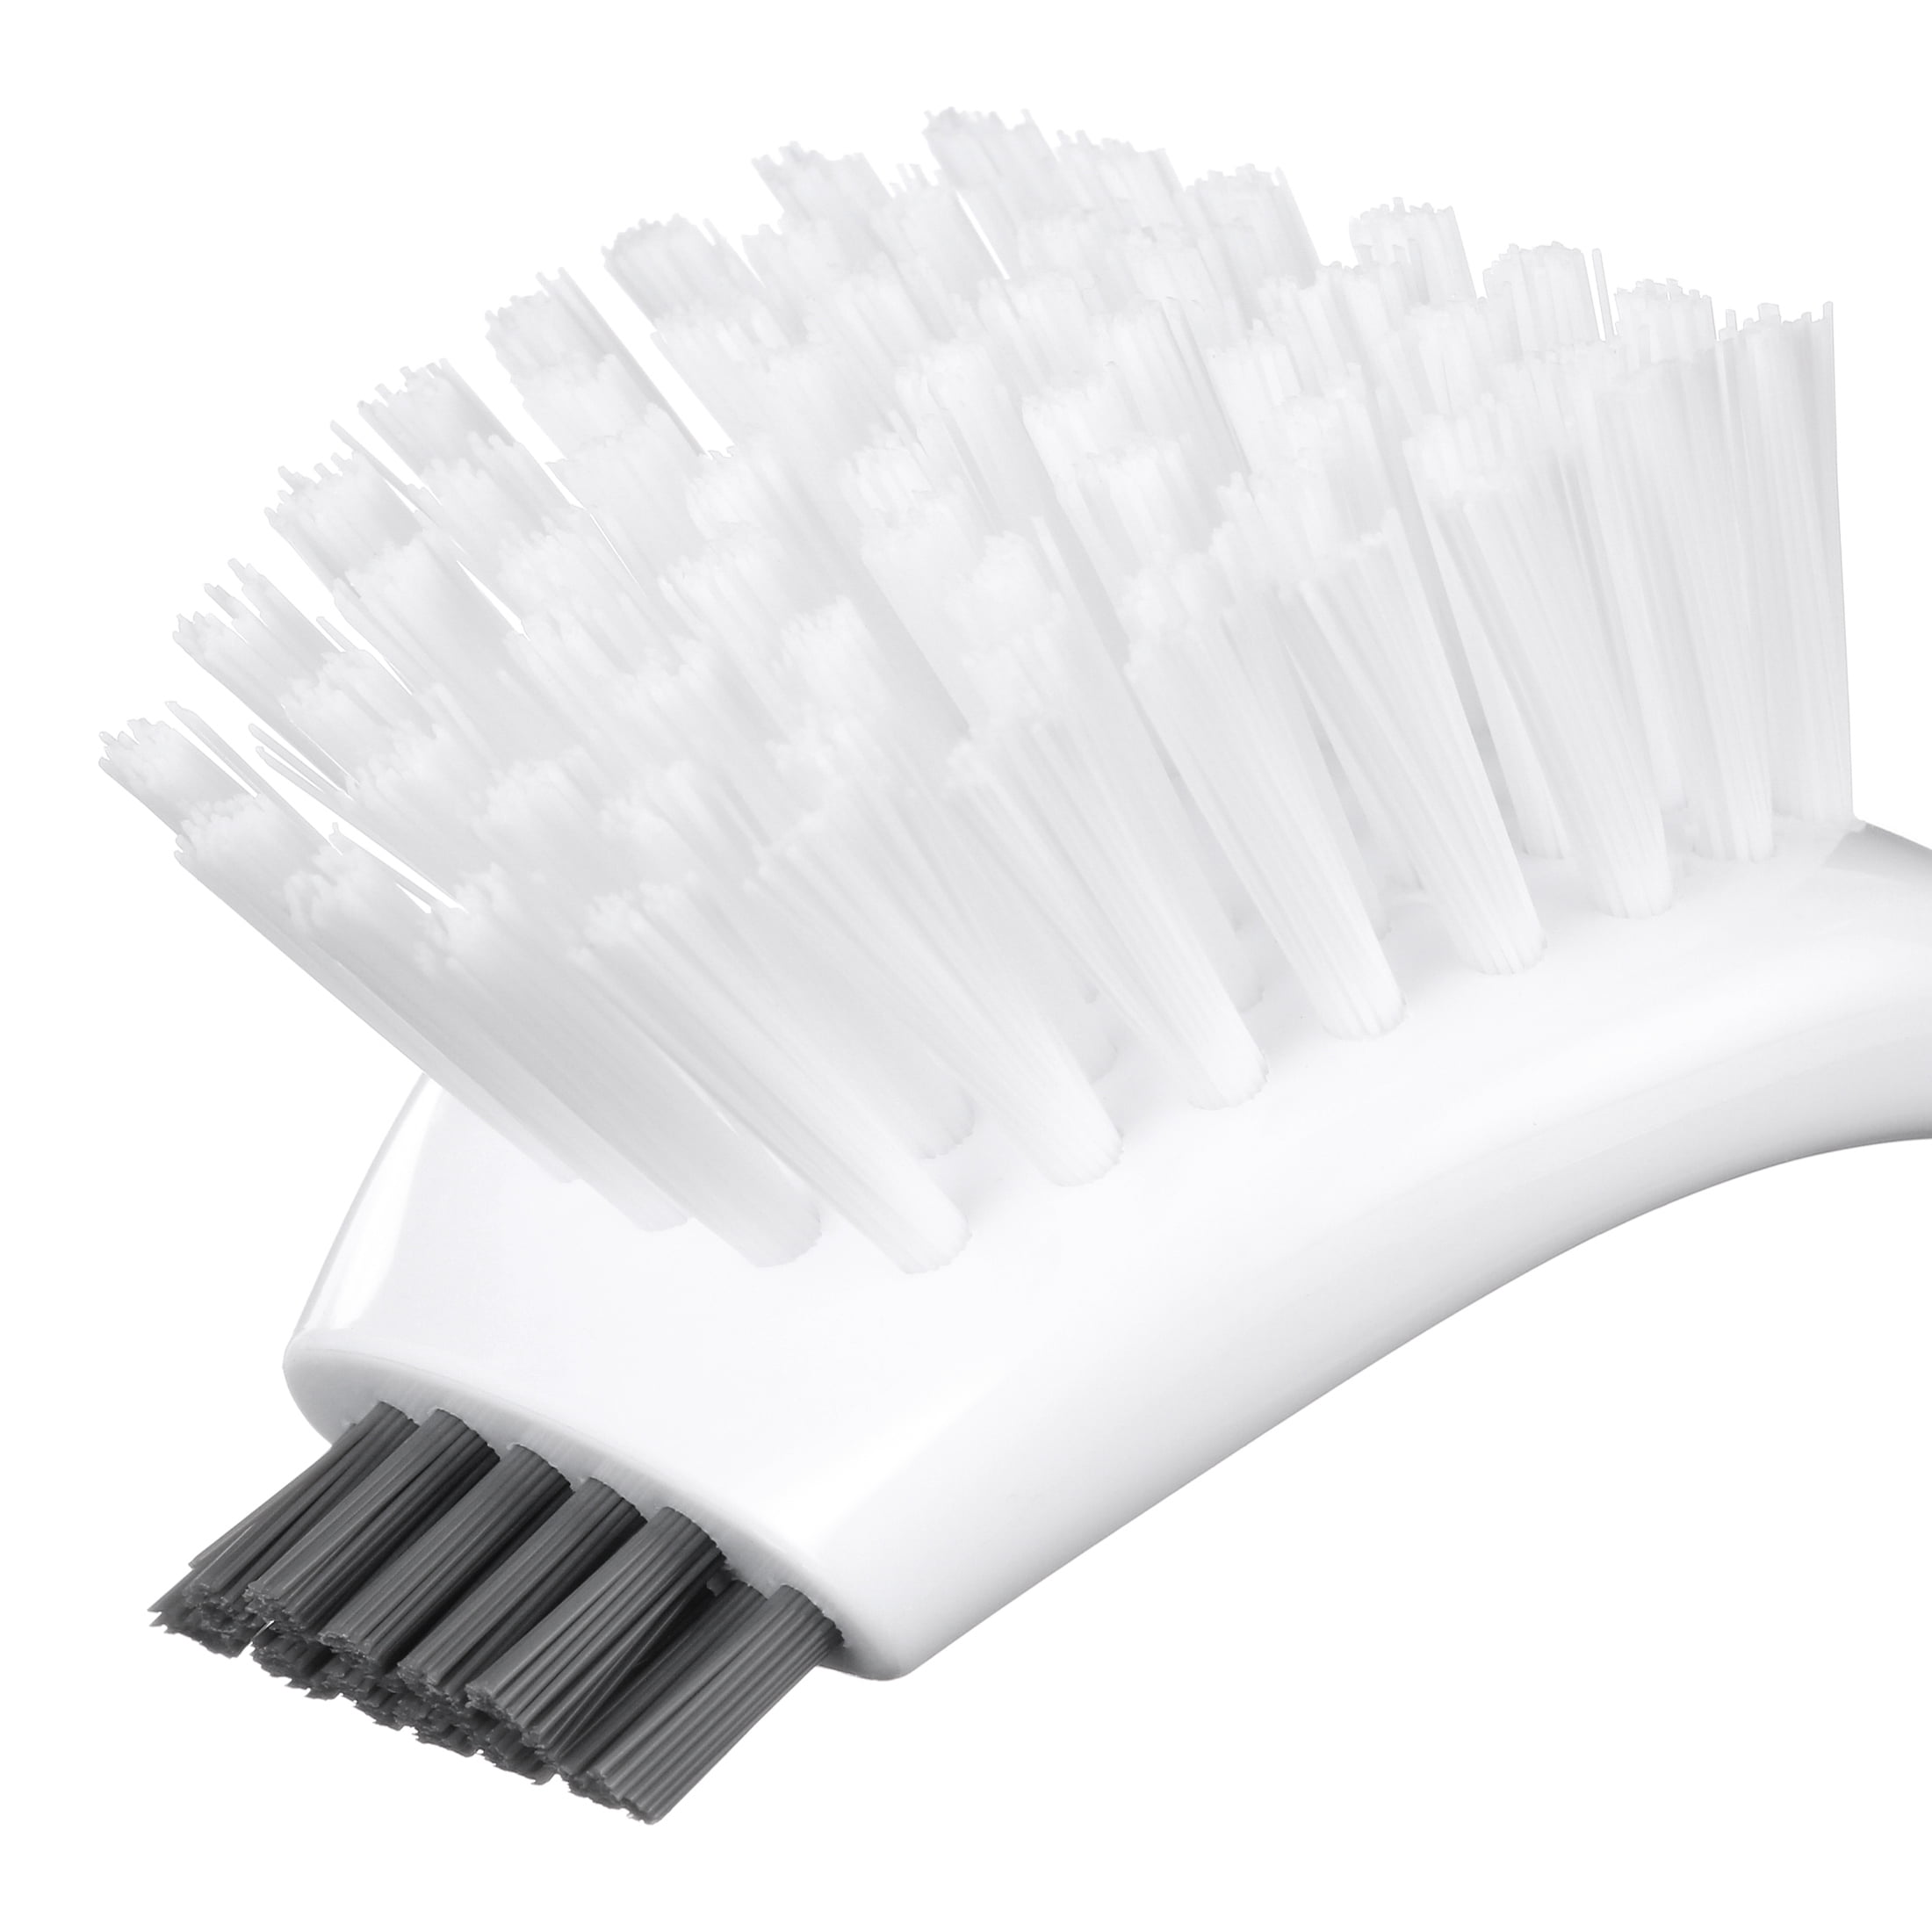 Utility Scrub Brush, 20, White, Nylon, Long Handle, ACS Industries B2217